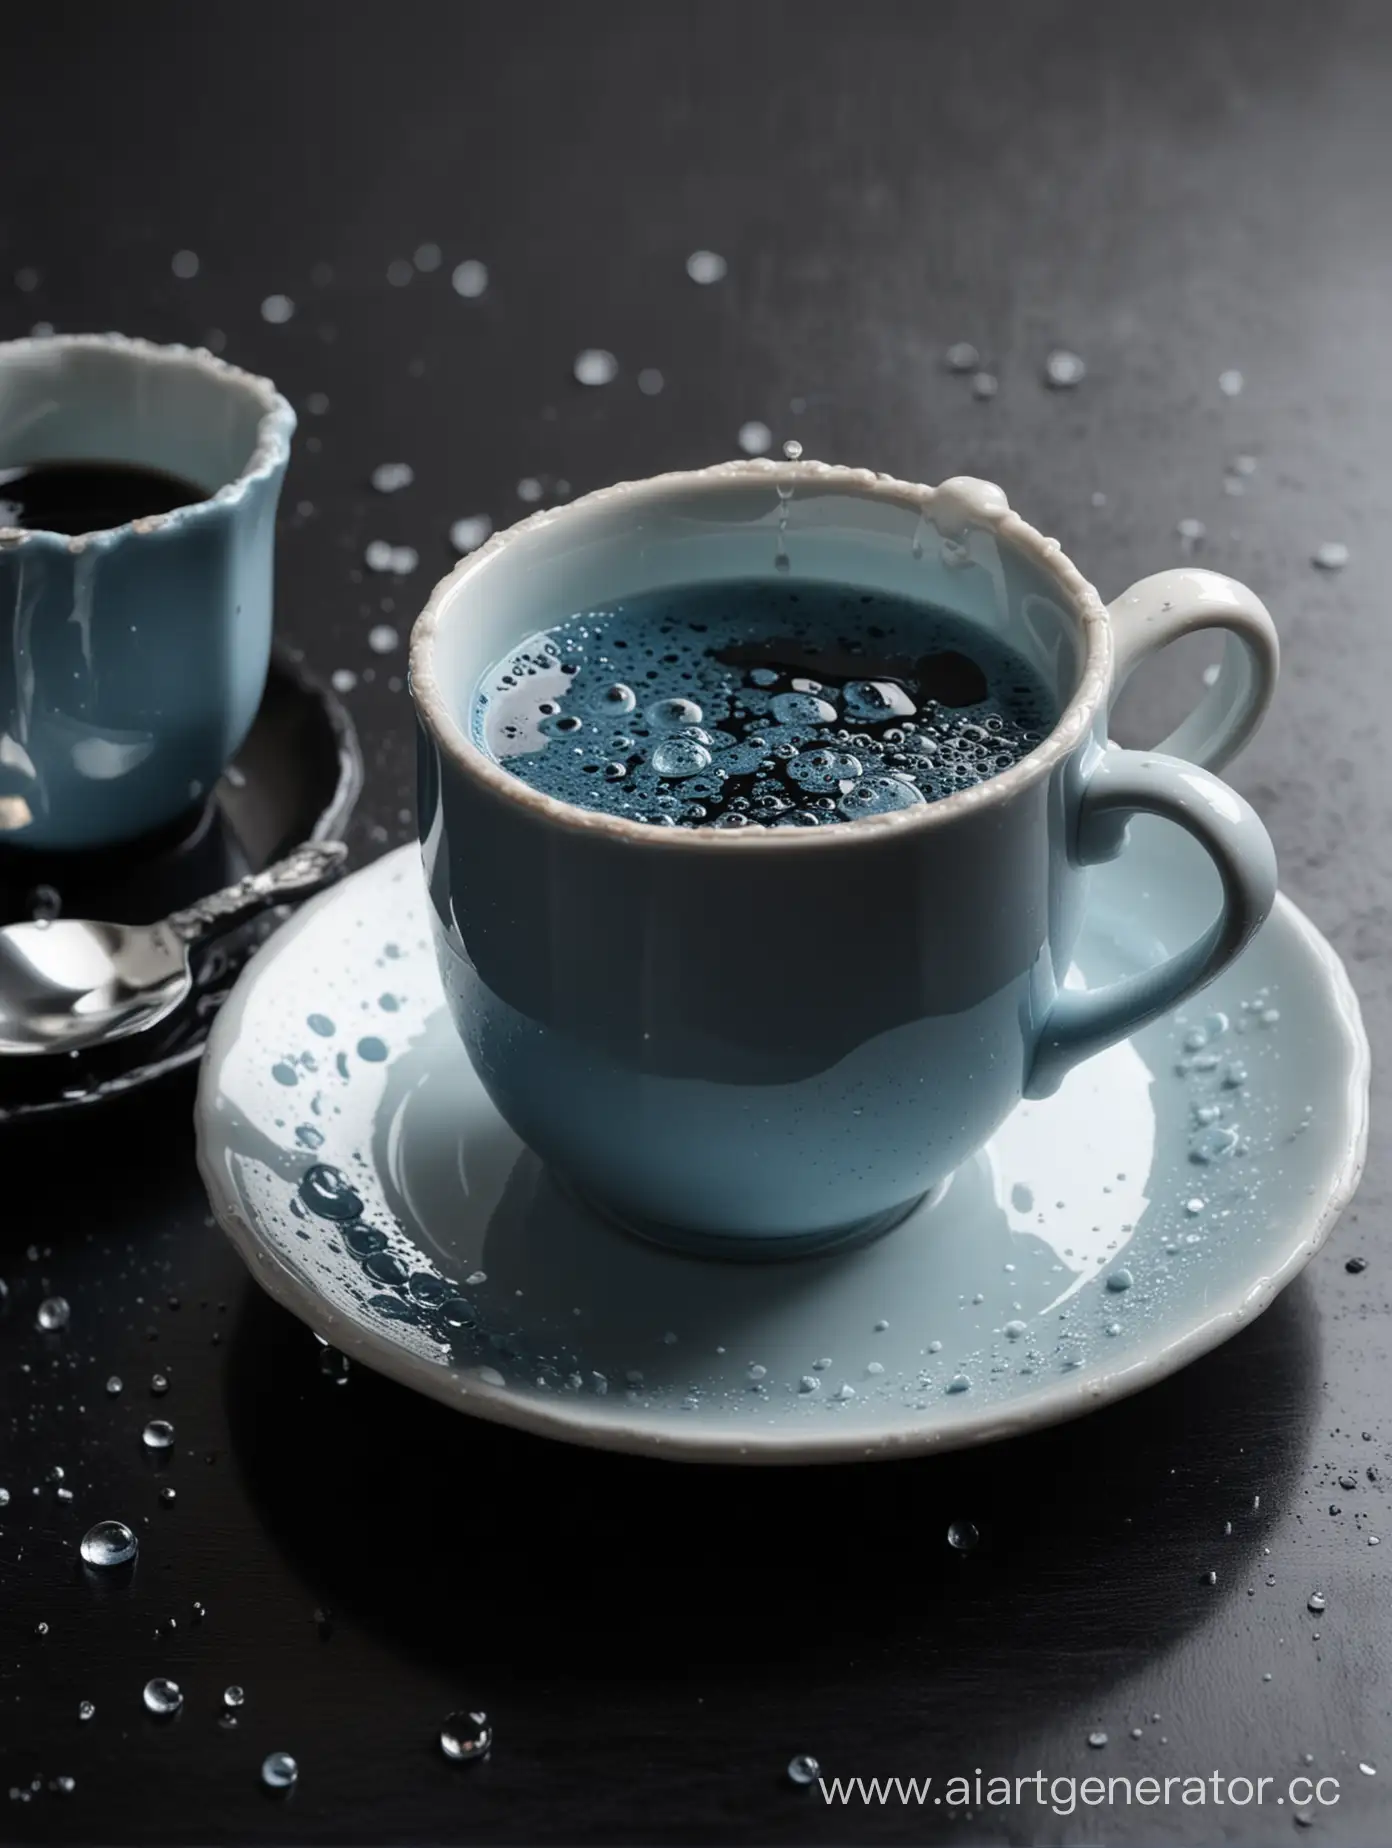 фарфоровая антикварная синяя чашка кофе на чёрном лакированном столе. стол и чашка с чёрным кофе {{полупрозрачная белёсая густая жидкость плавает в чёрном кофе, стекает по стенкам чашки в блюдце}} забрызгано растекающимся разного размера каплями белёсой полупрозрачной густой жидкости. Крупным планом ракурс  немного сбоку и чуть сверху